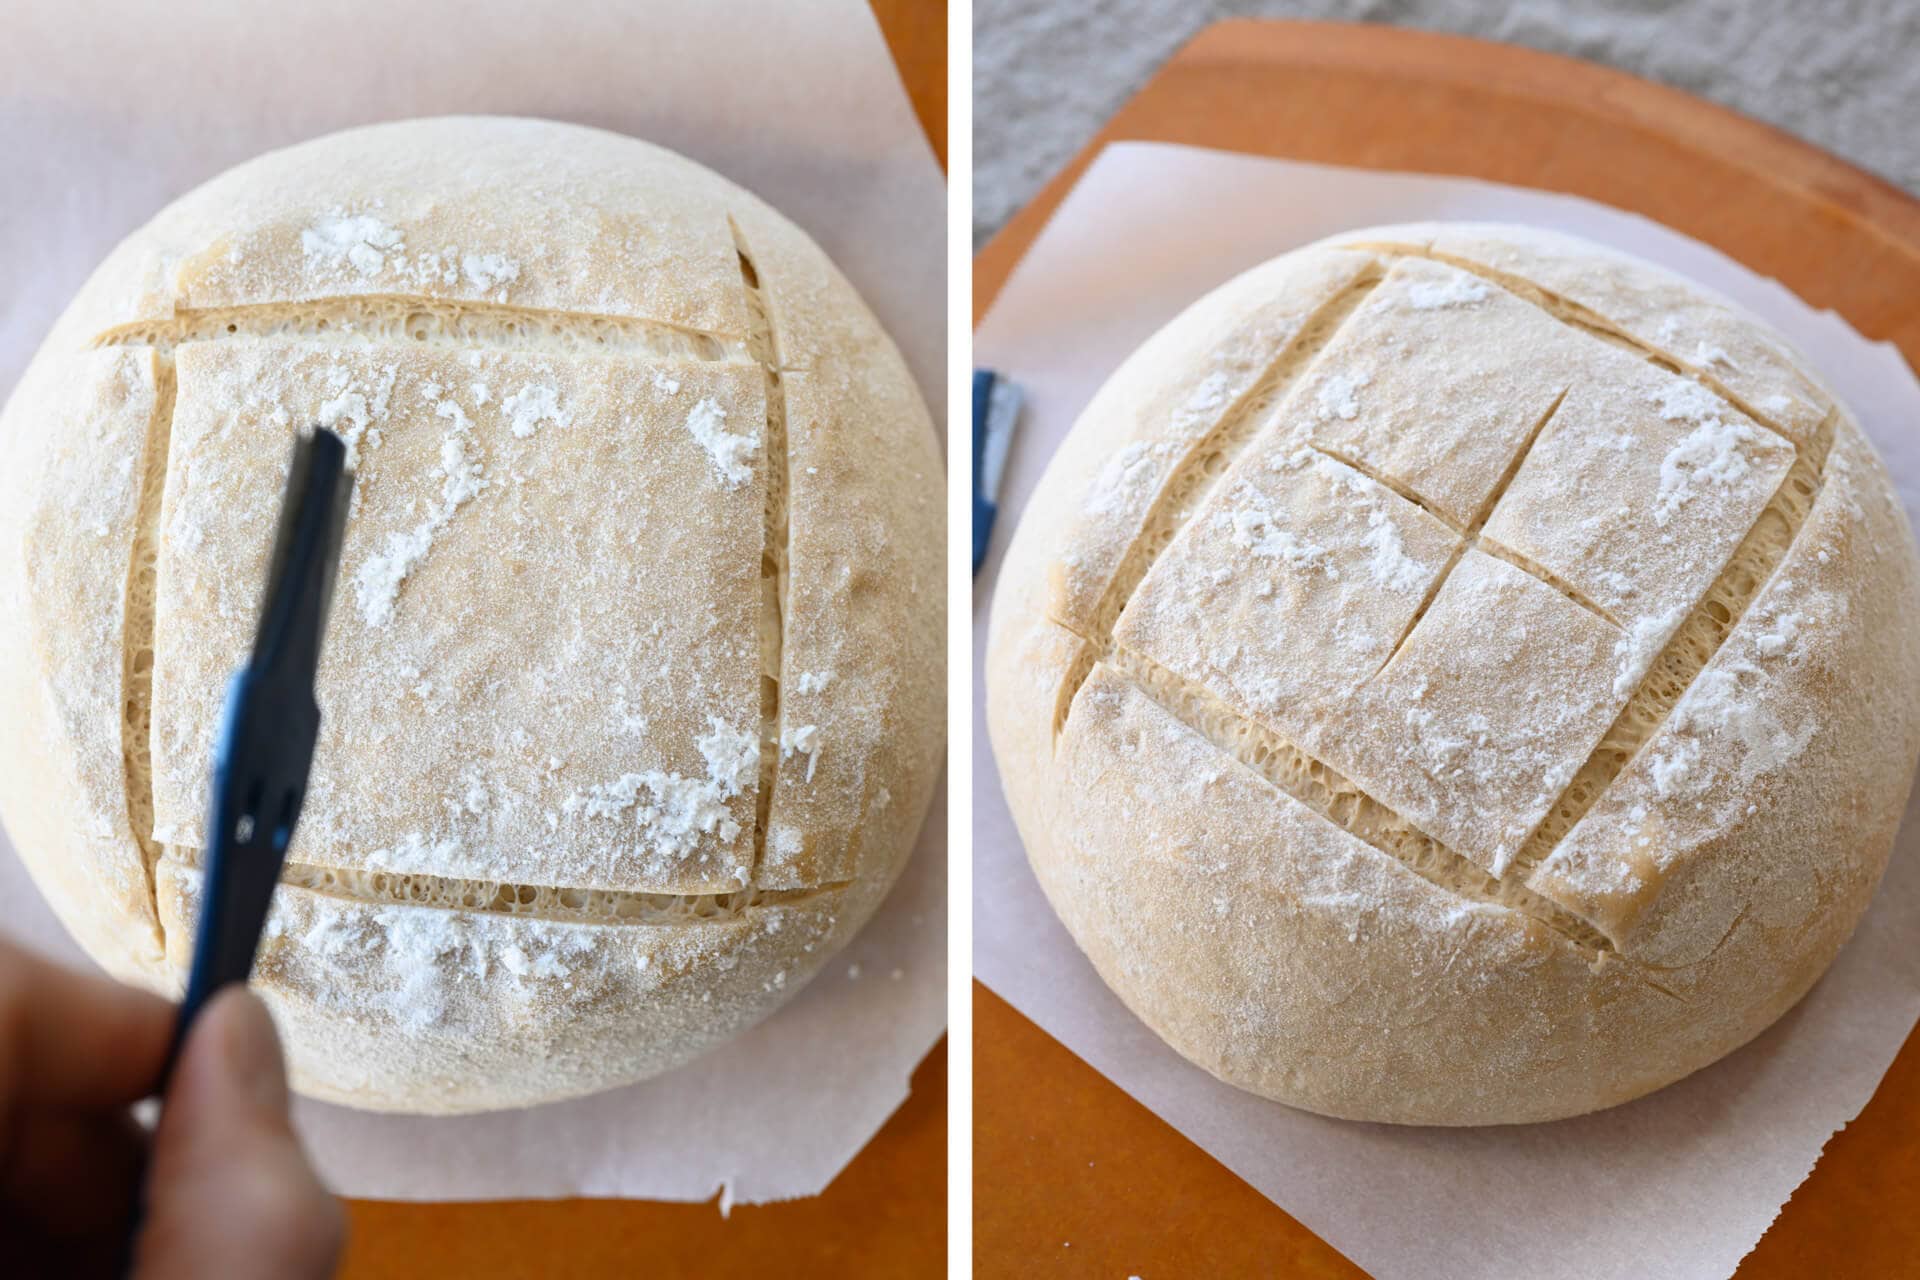 Scoring bread dough